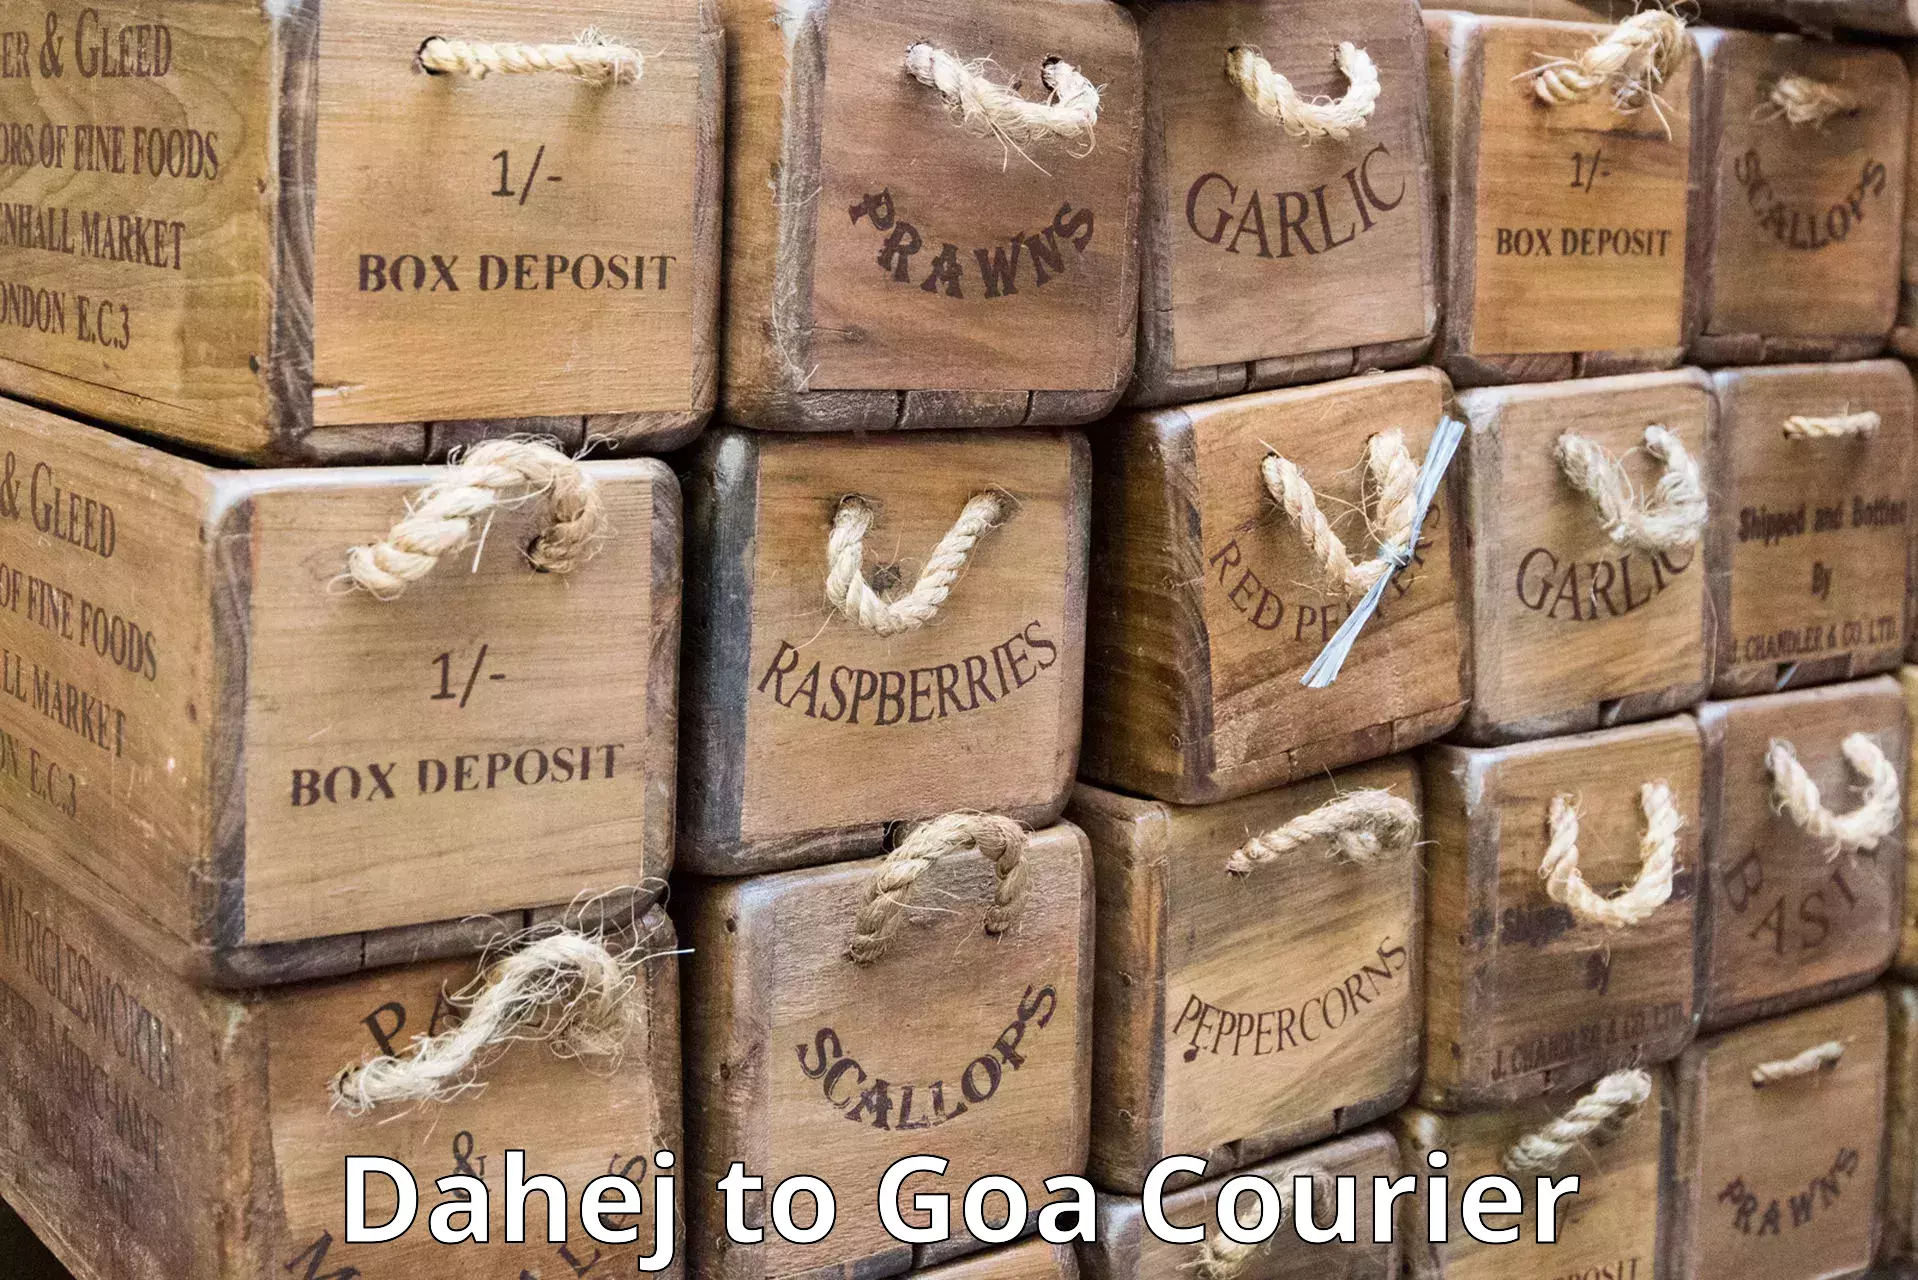 Quick dispatch service Dahej to Goa